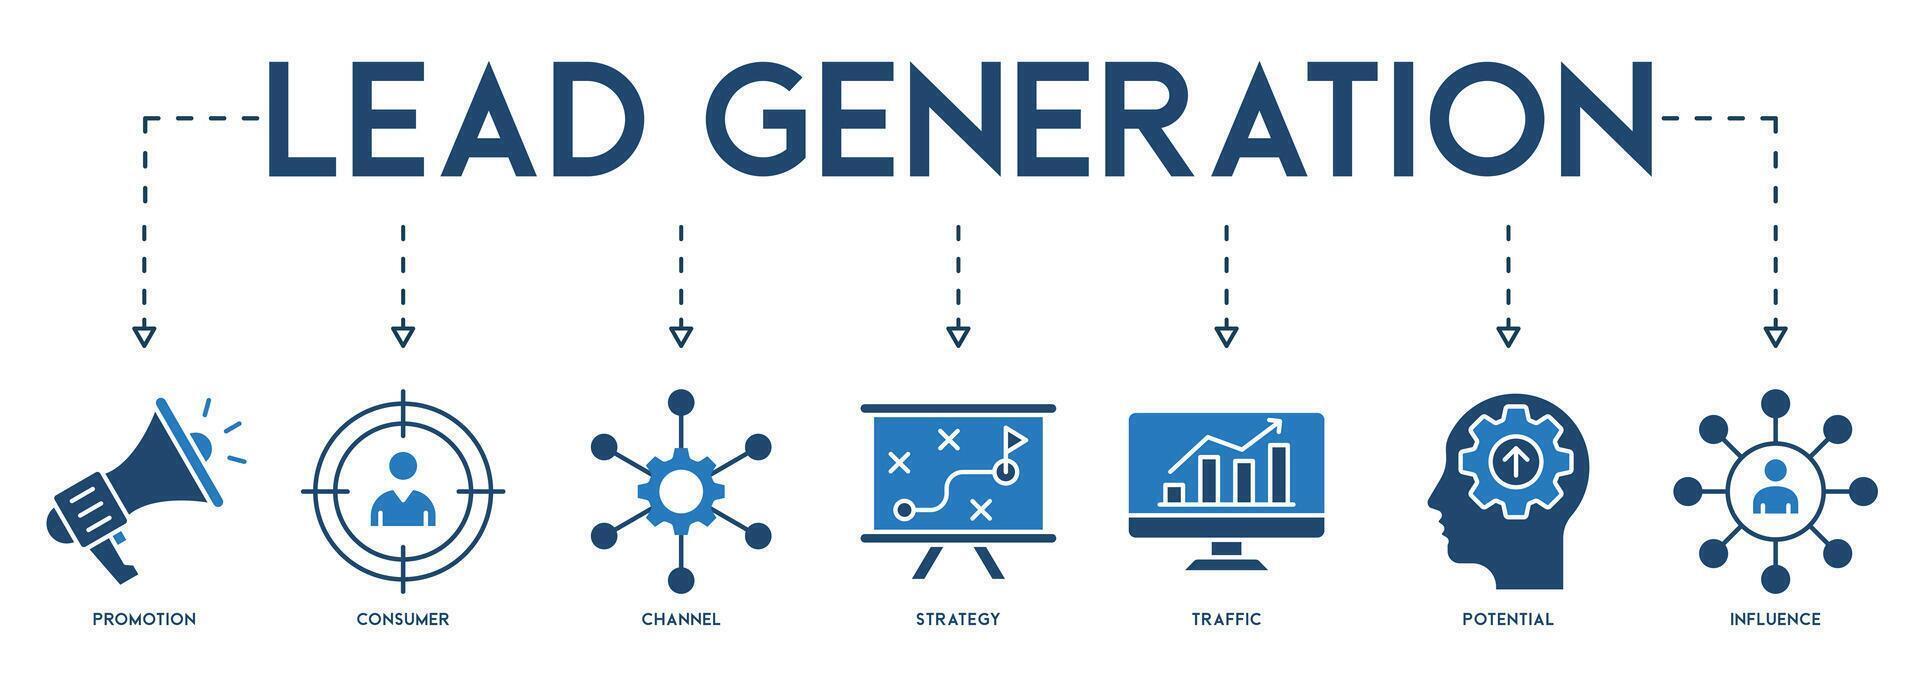 leda generation baner hemsida ikon vektor illustration begrepp med ikon av befordran, konsument, kanal, strategi, trafik, potential och inflytande